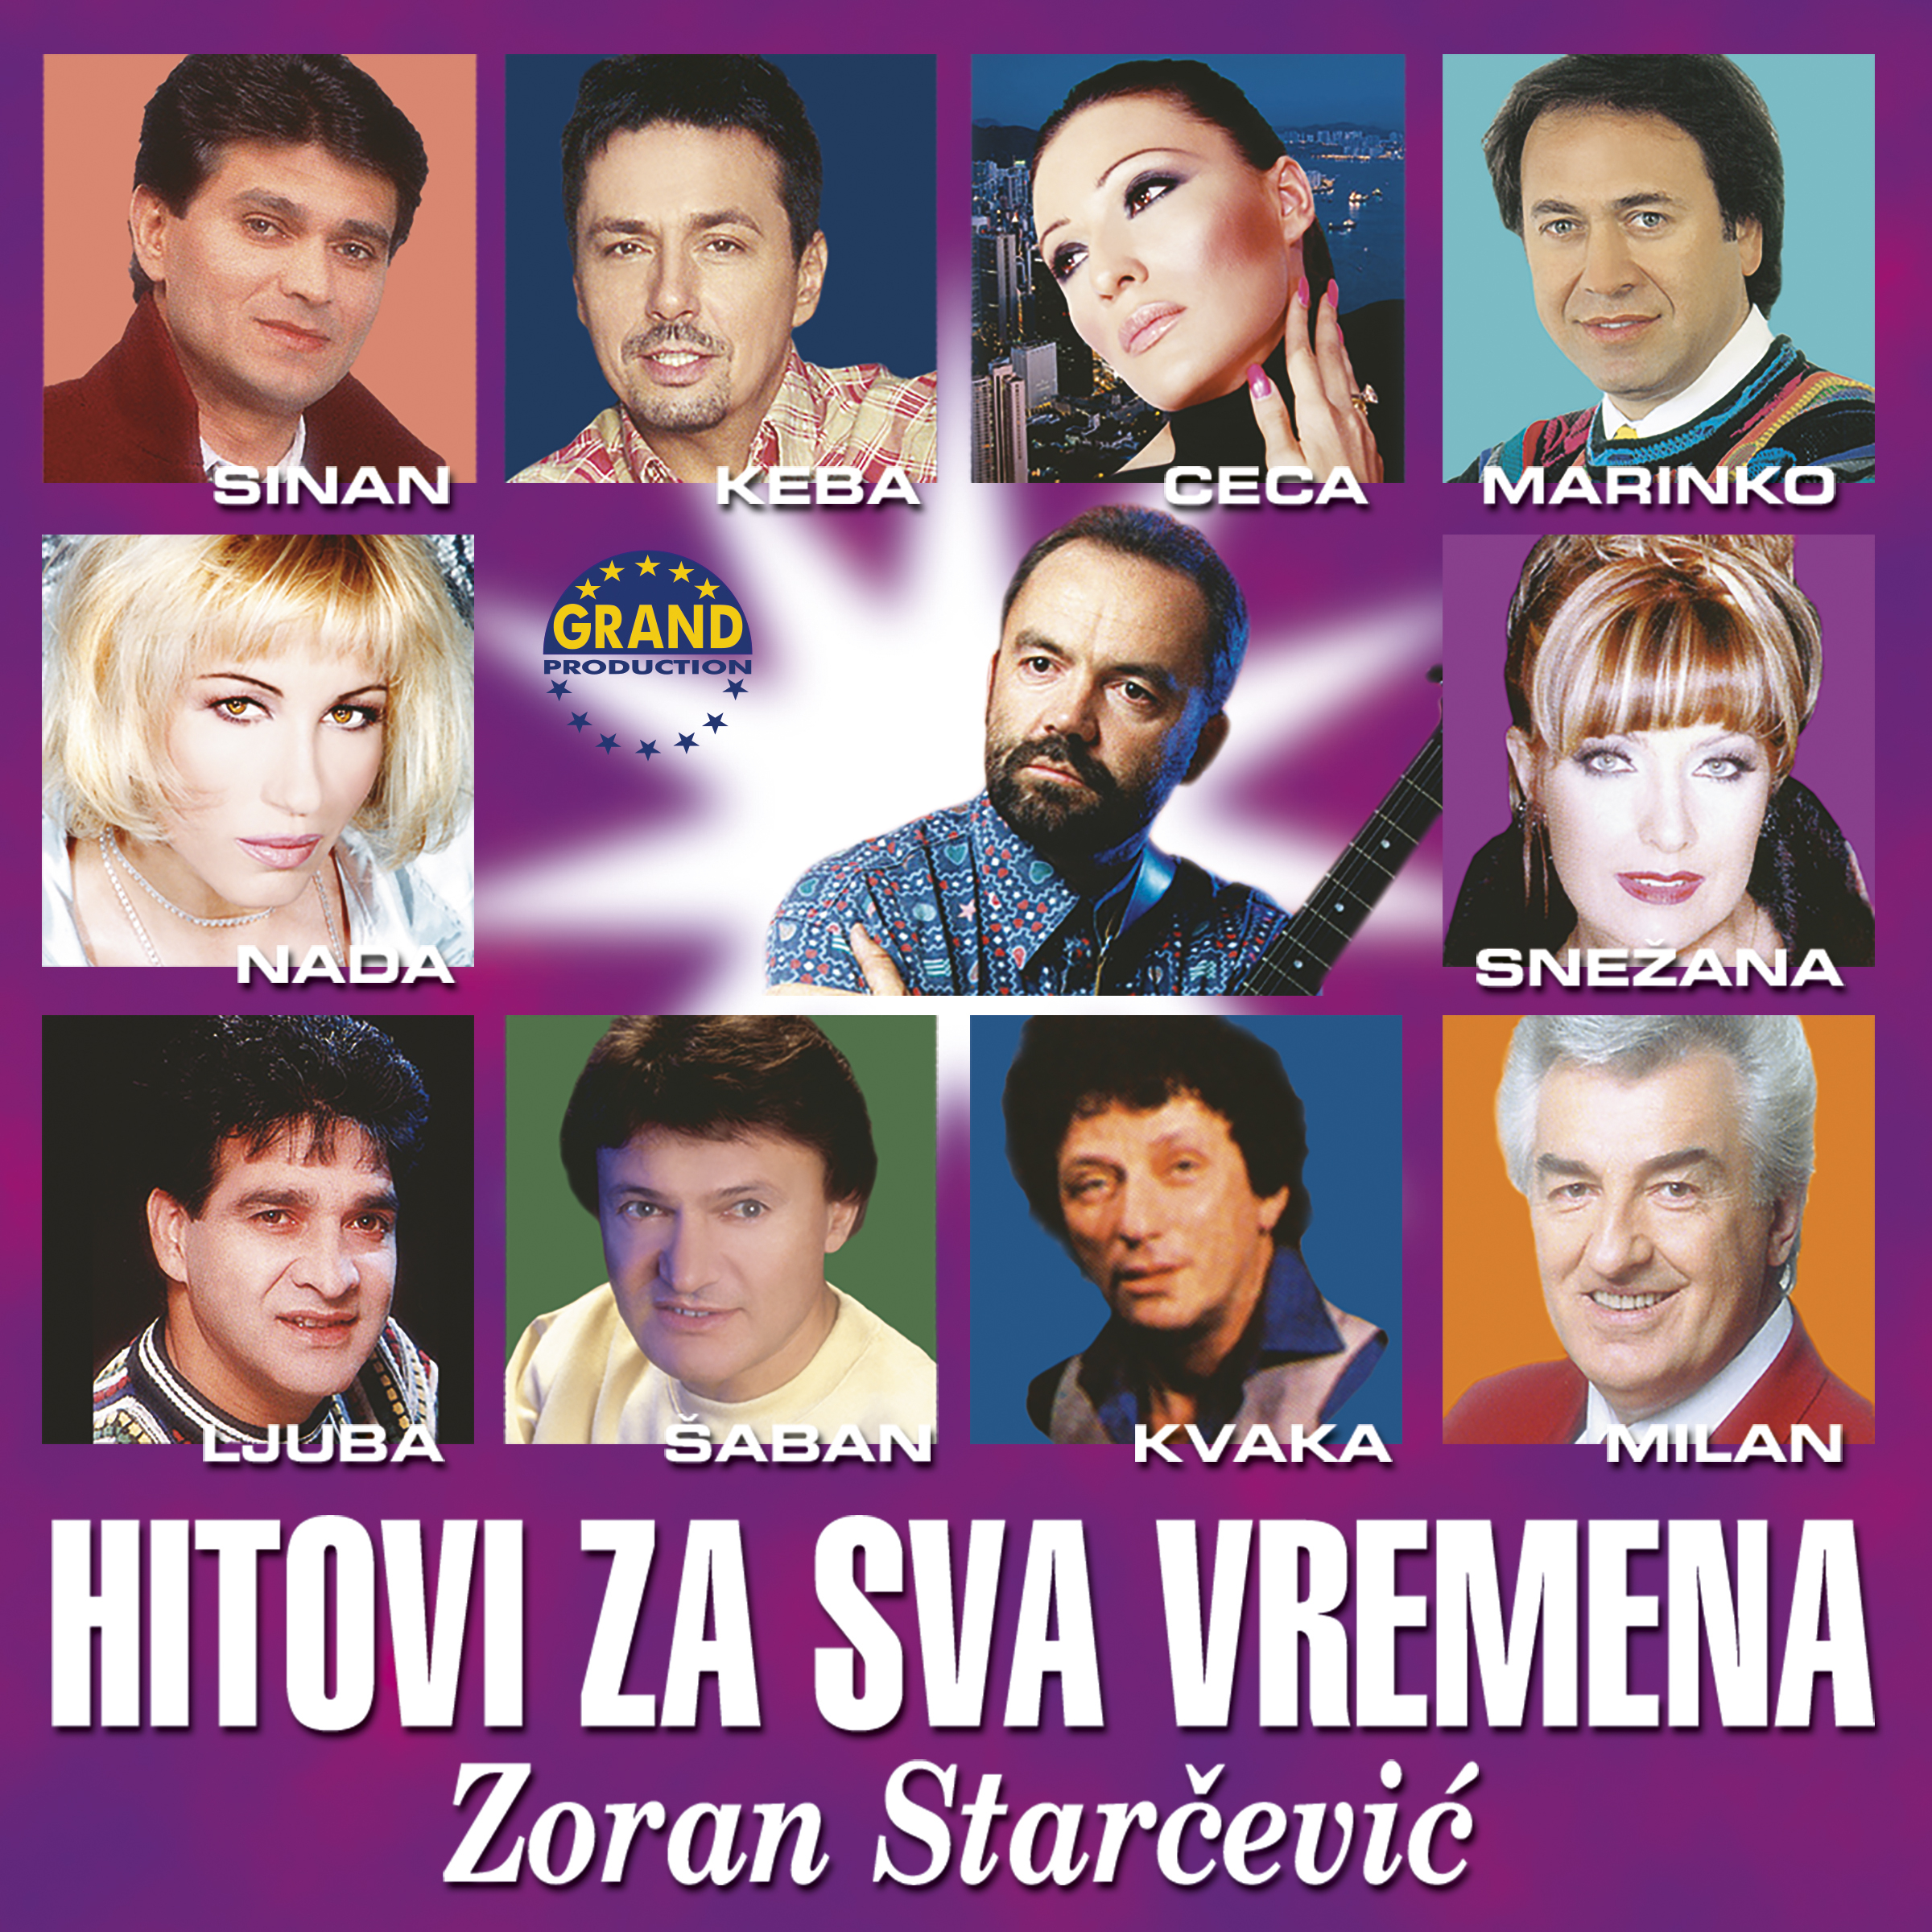 Zoran Starčević - Hitovi za sva vremena